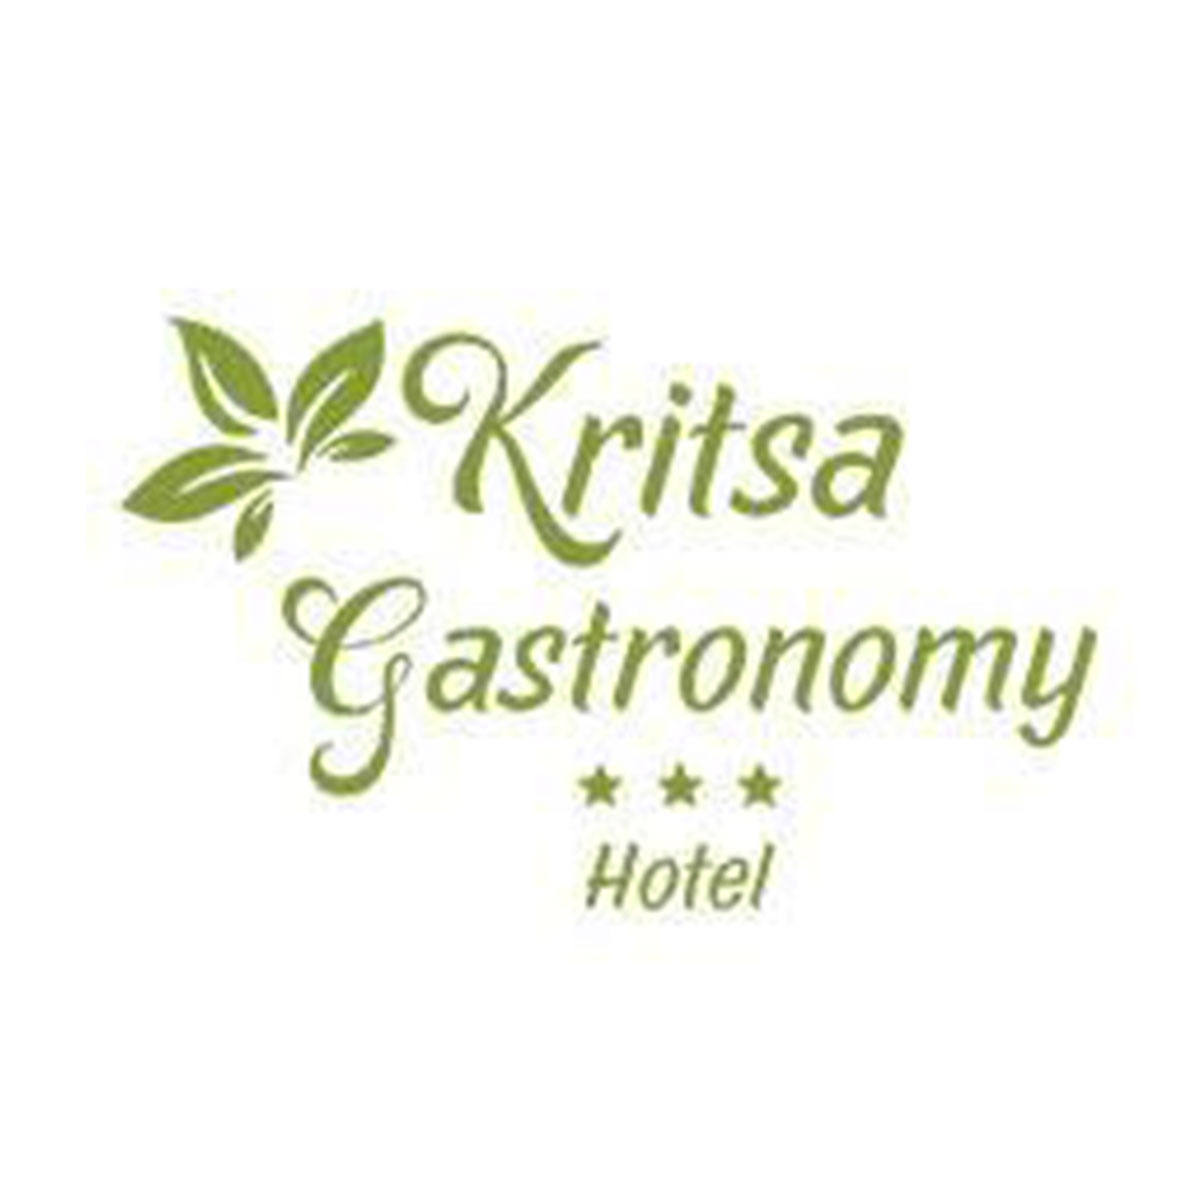 Kritsa Gastronomy Hotel